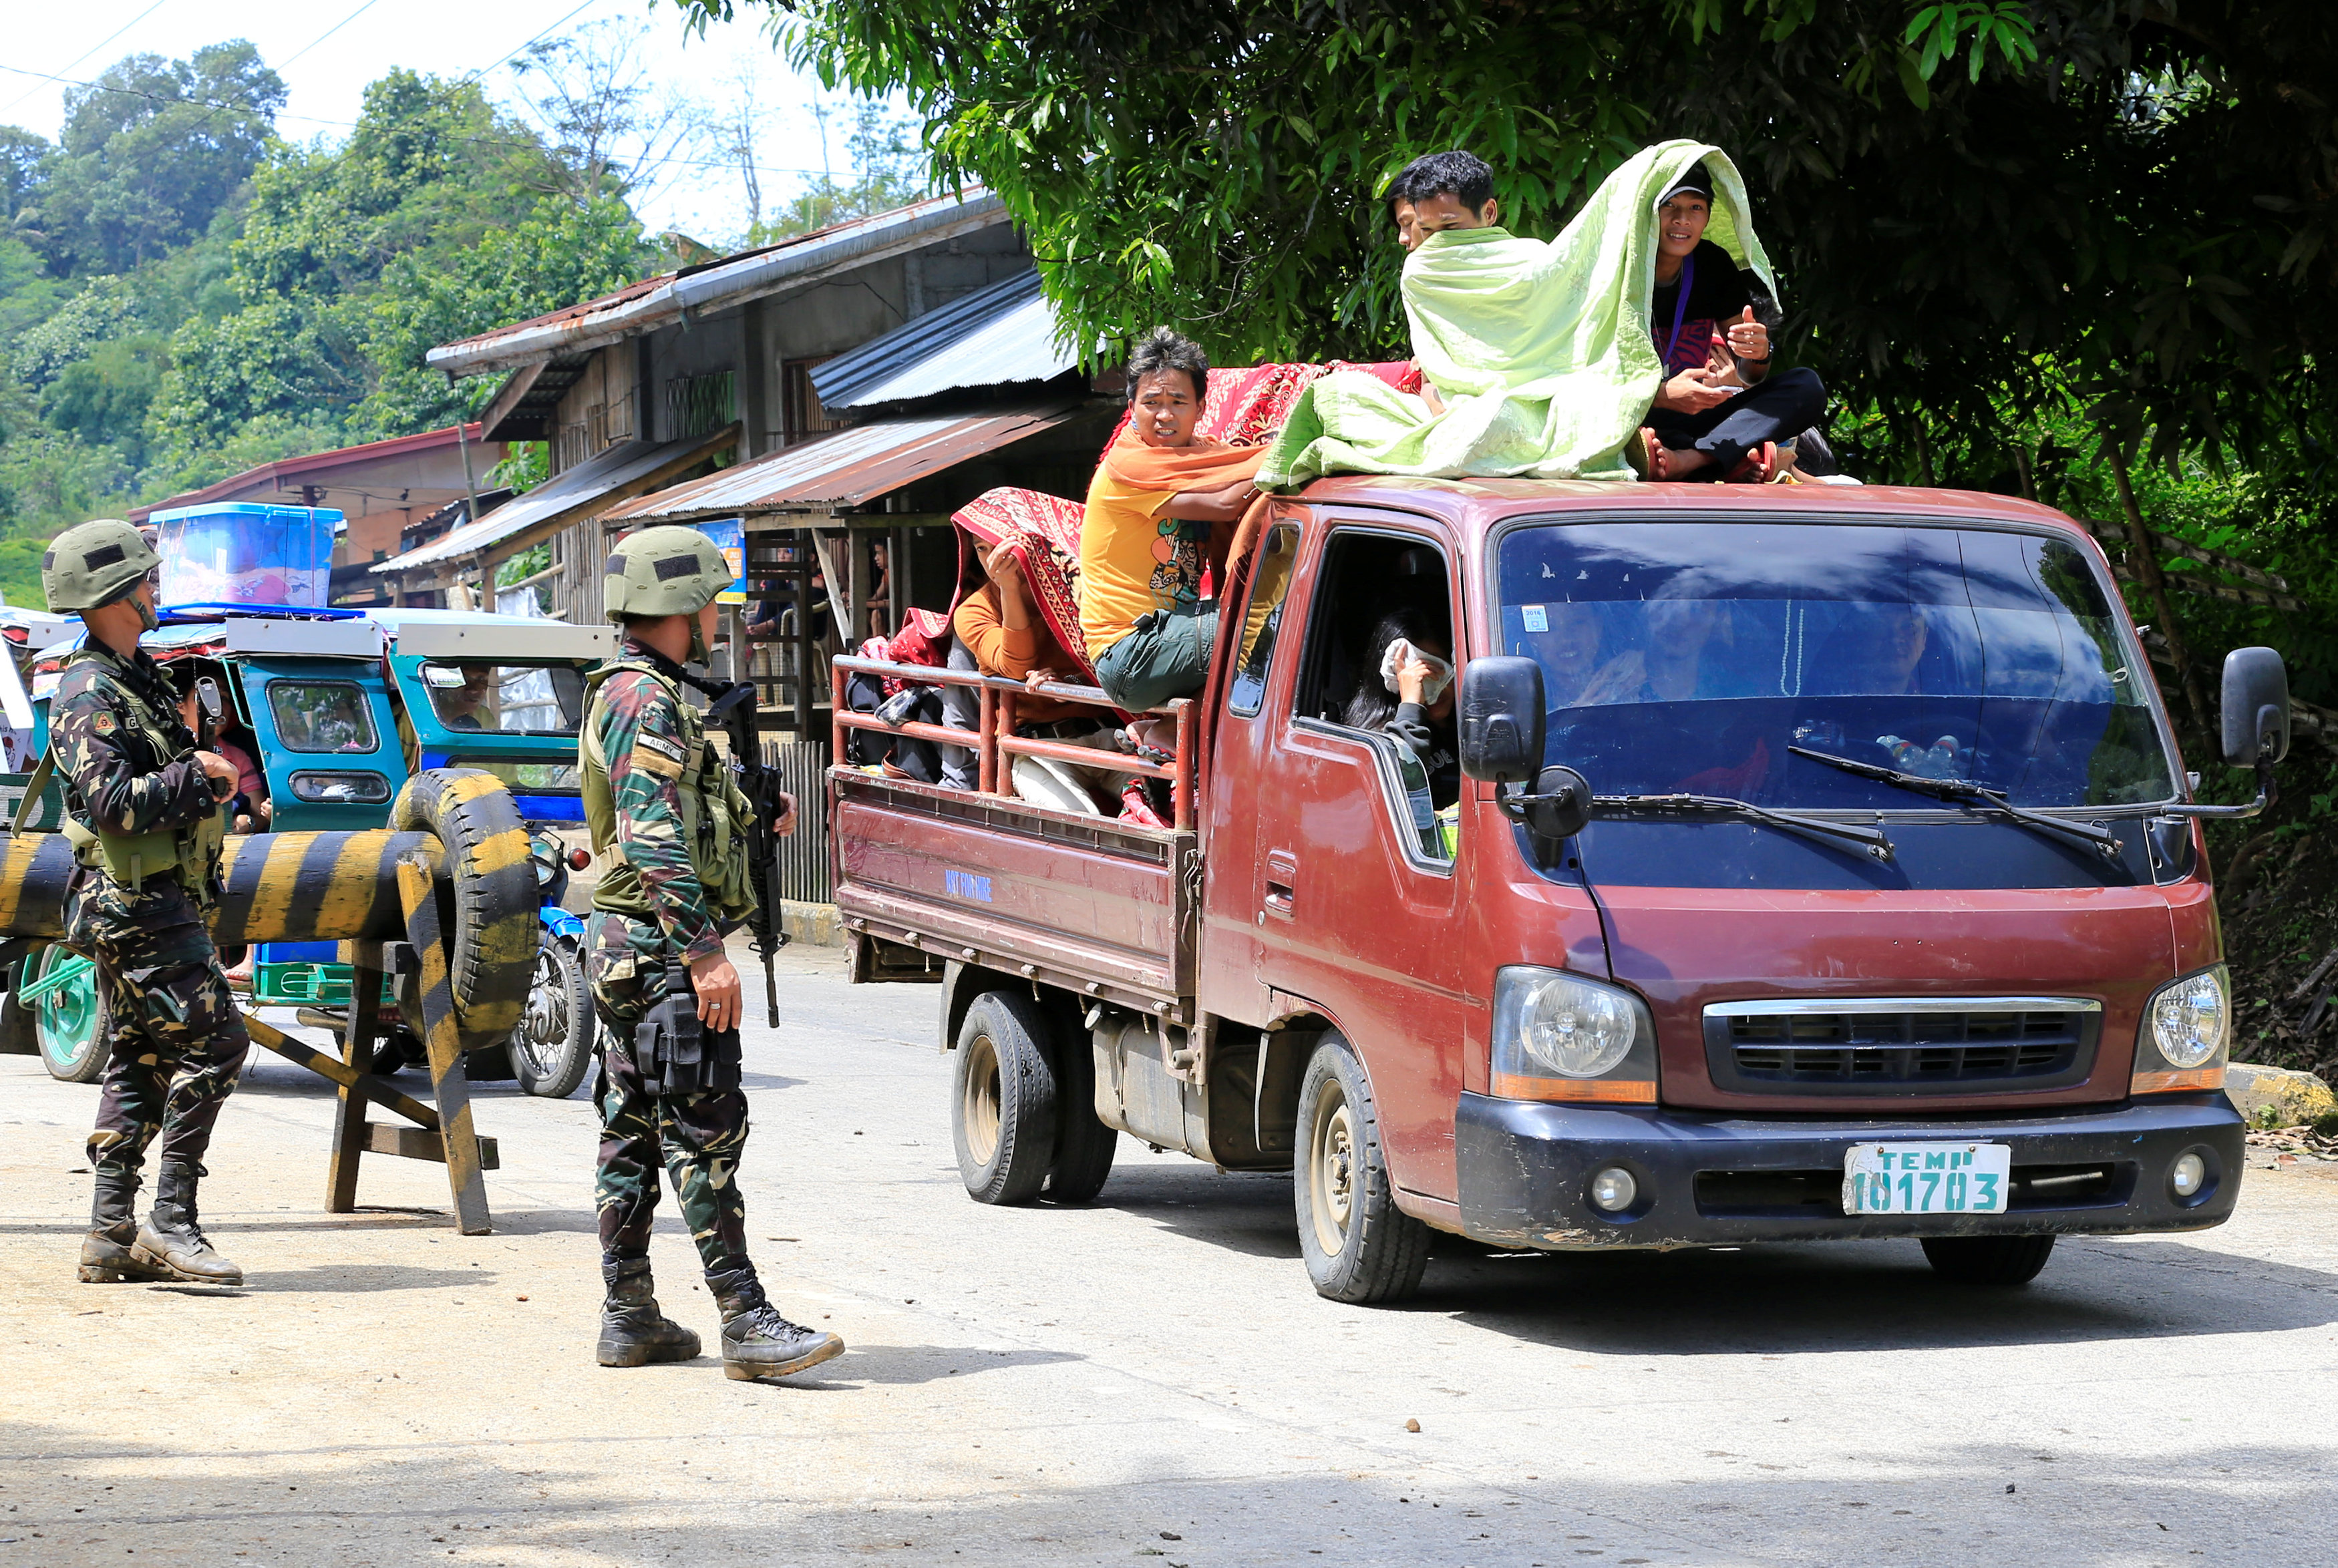 El hecho ocurrió en la ciudad de Marawi, cuando se desarrollaba un enfrentamiento entre los extremistas y fuerzas gubernamentales.